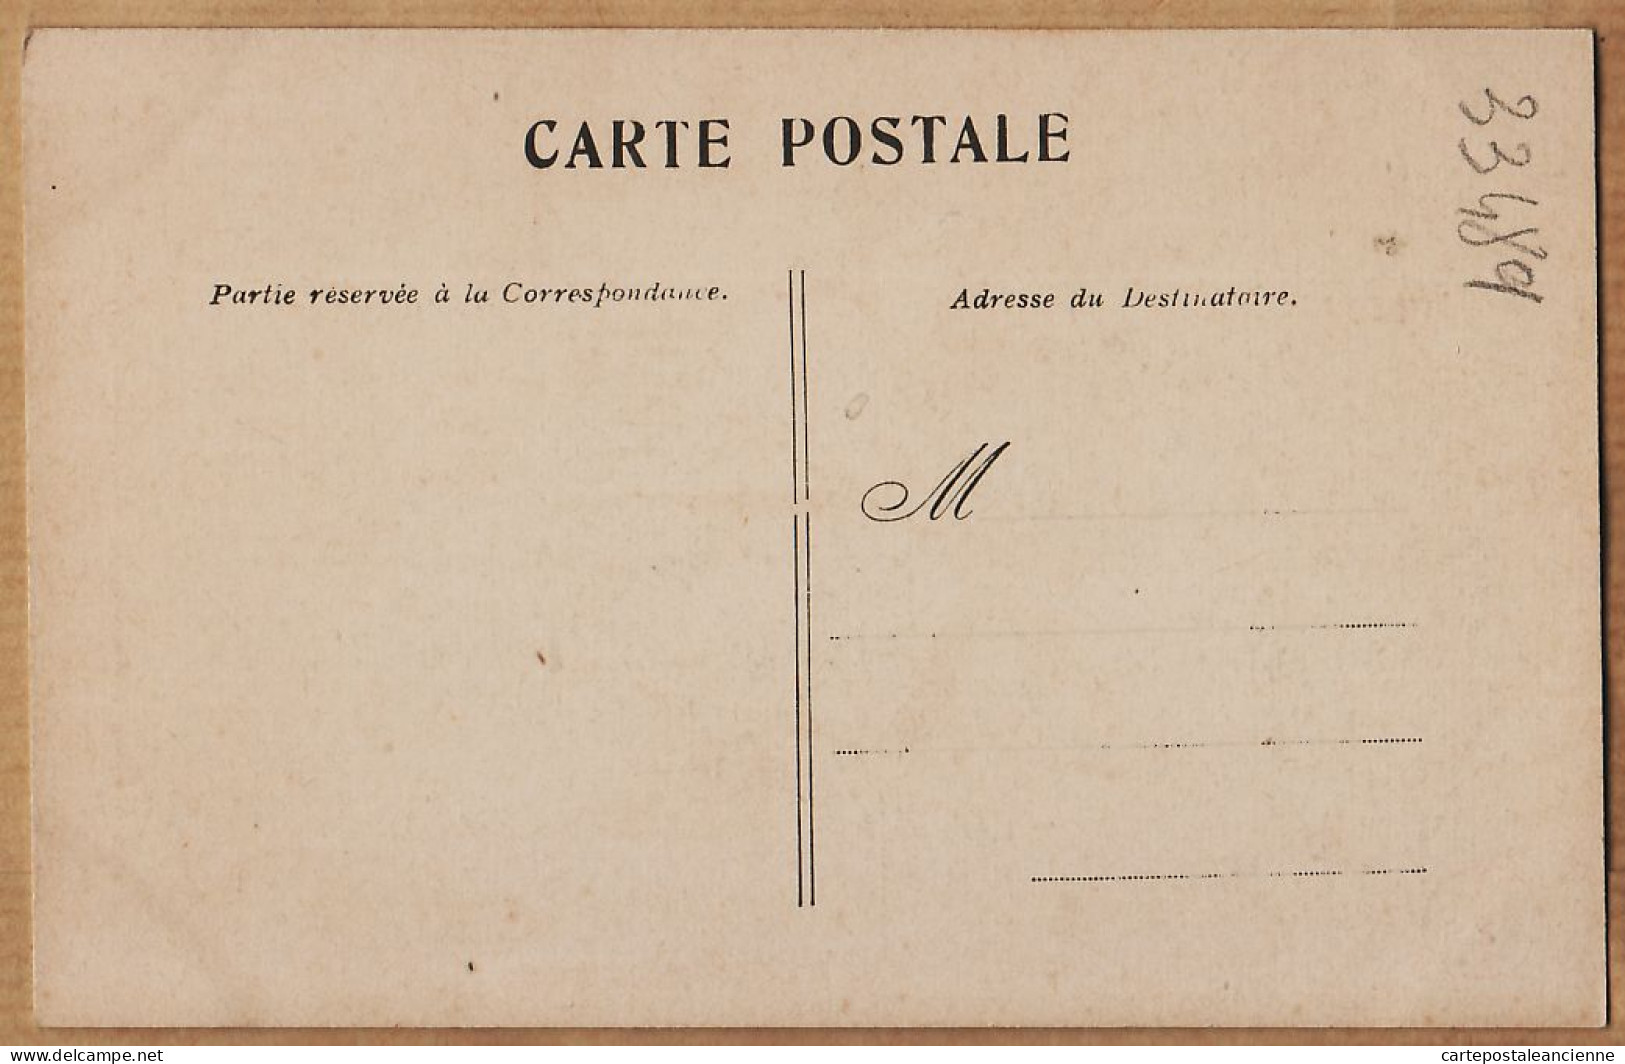 24124 /⭐ ◉  PARIS 1er Le LOUVRE Pavillon De FLORE Cliché 1900s Edition A LA MENAGERE Etat: PARFAIT  - District 01